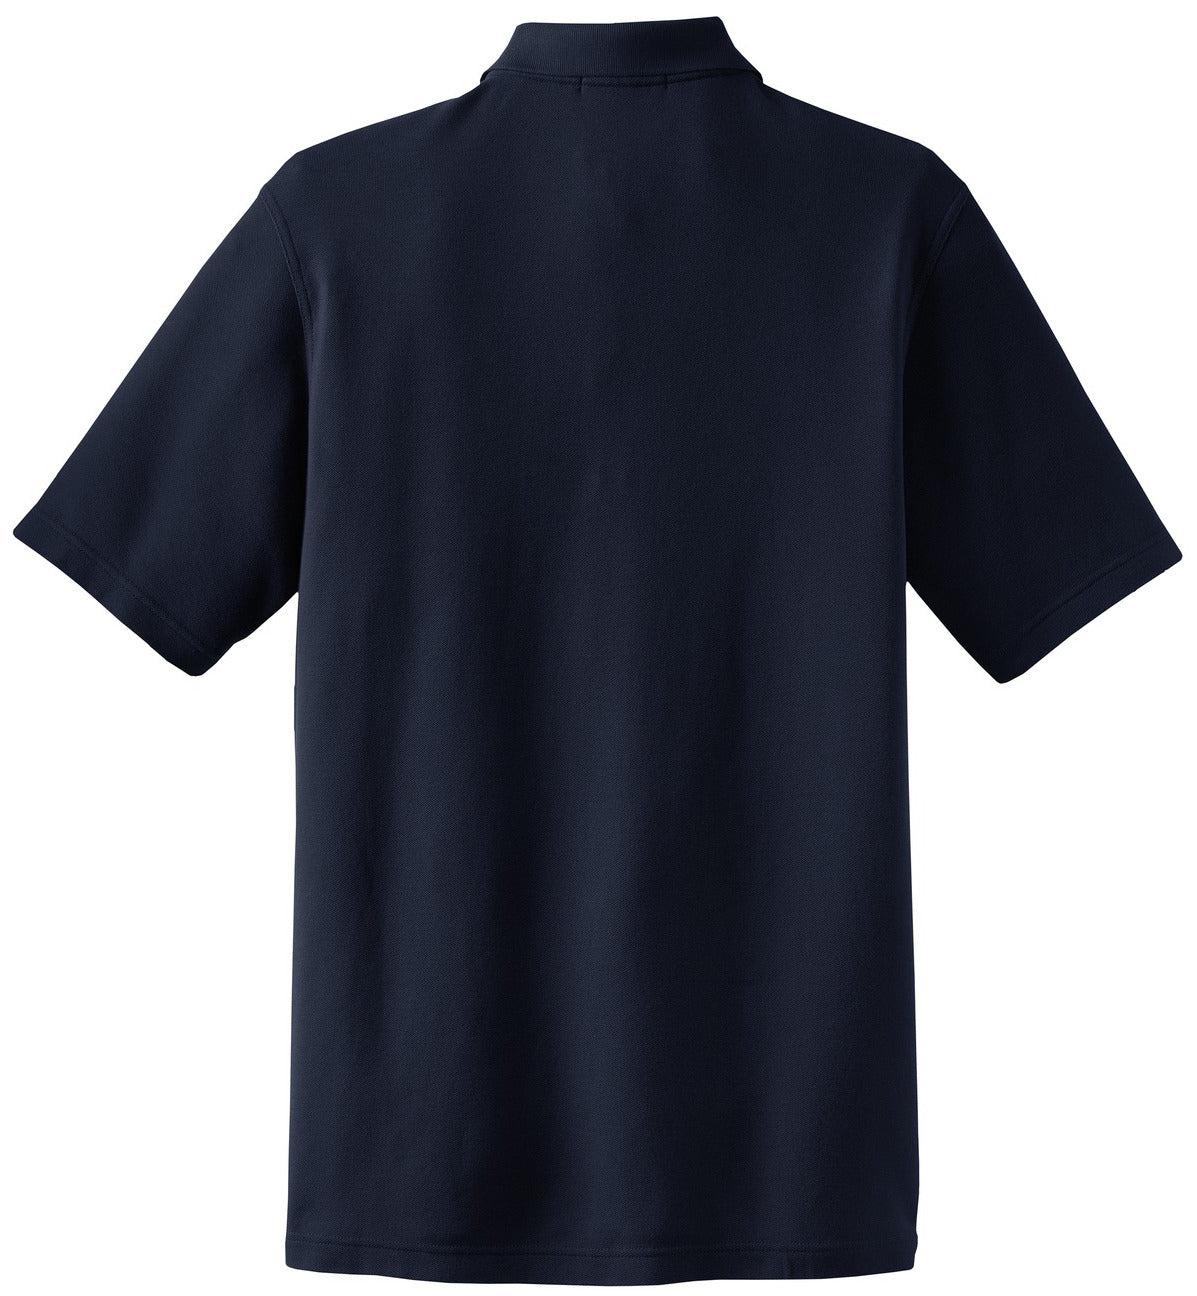 Mafoose Men's EZCotton Pique Pocket Polo Shirt Navy-Back